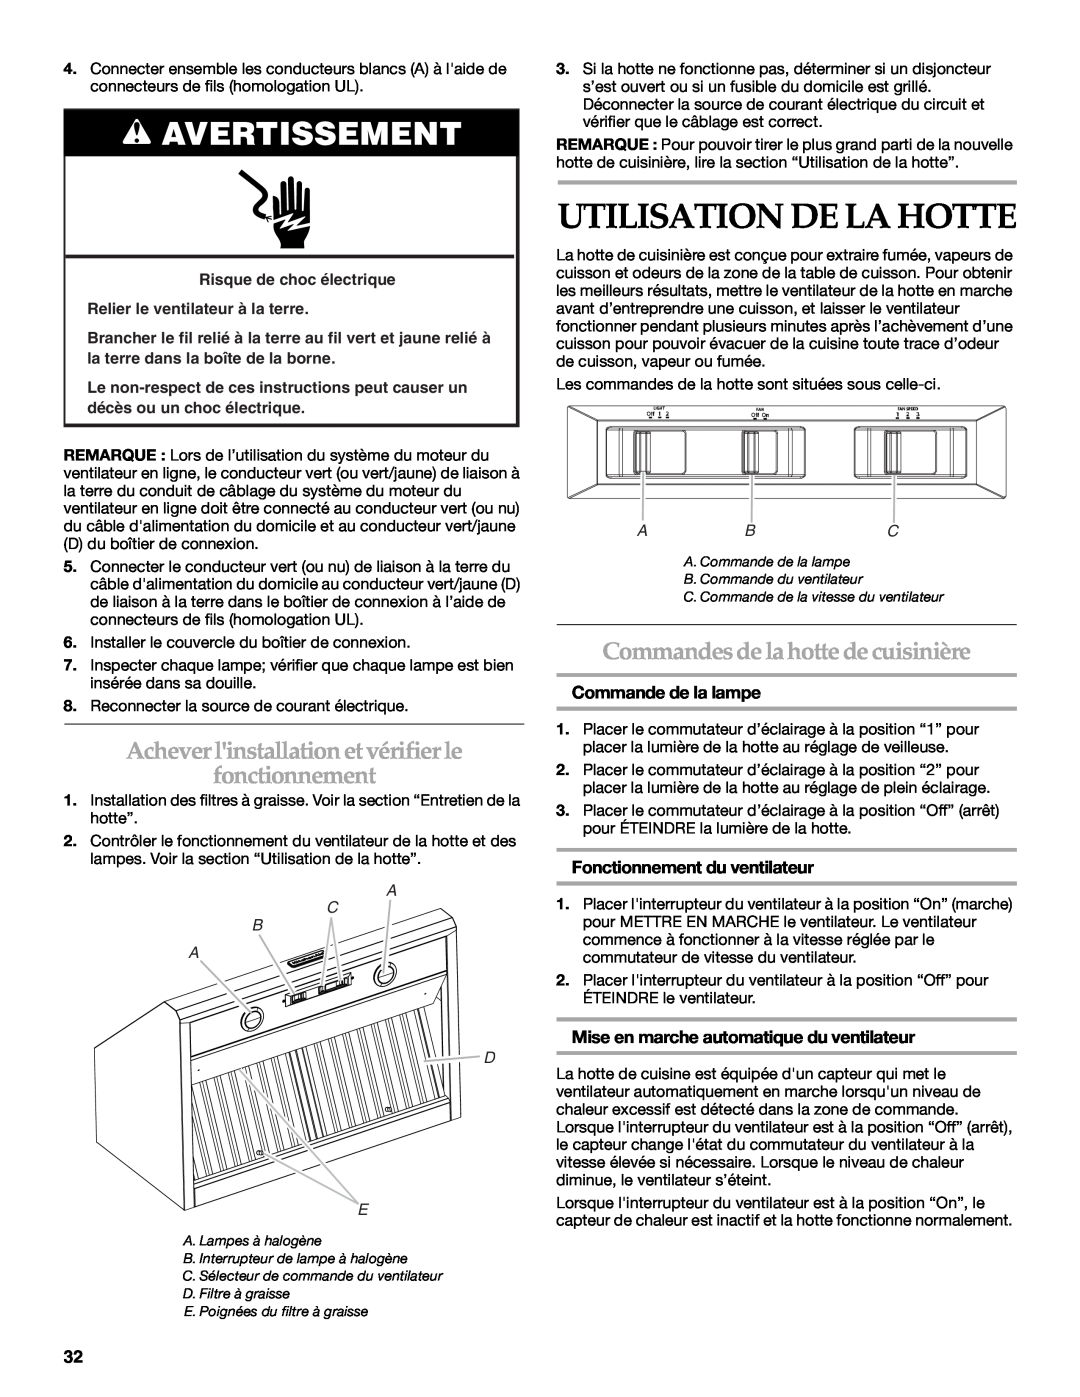 KitchenAid W10331007B Utilisation De La Hotte, Achever linstallation et vérifierle fonctionnement, Commande de la lampe 